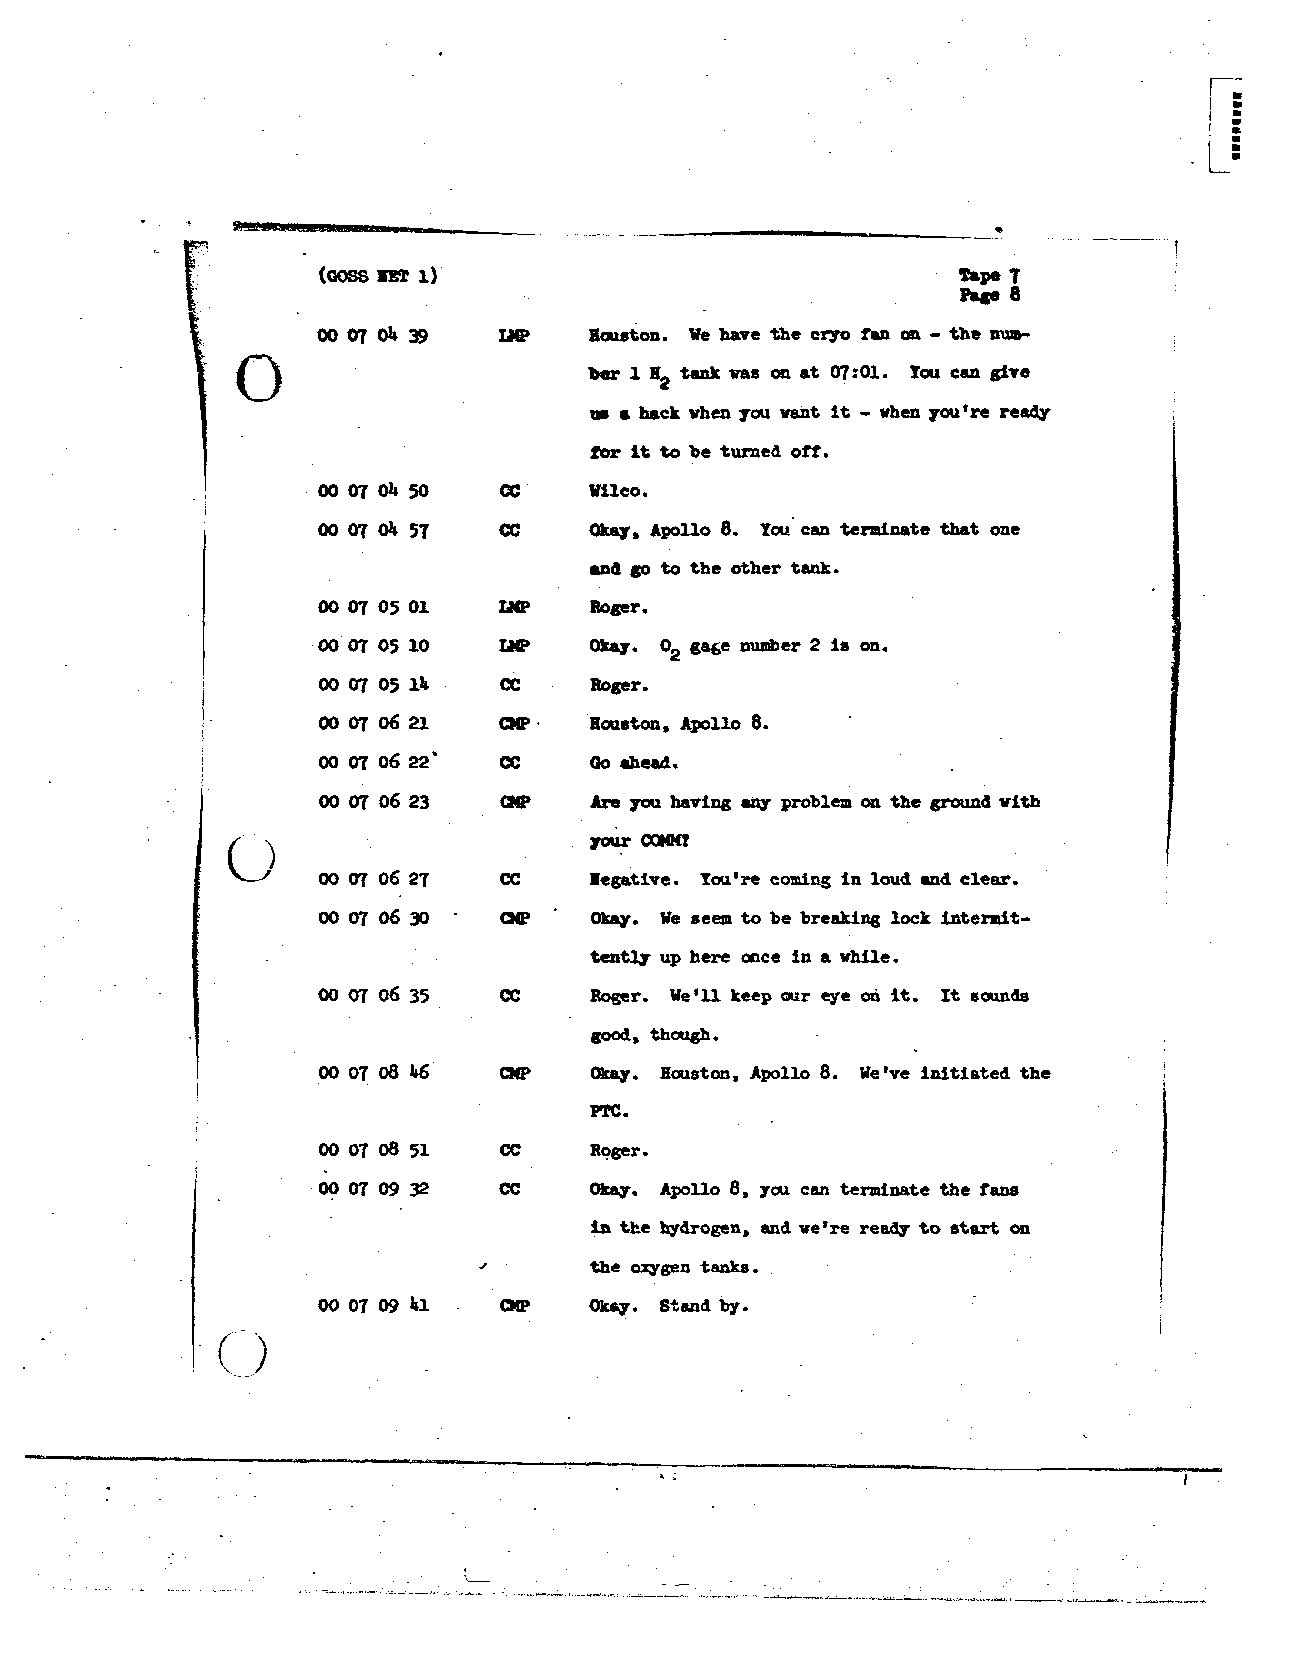 Page 70 of Apollo 8’s original transcript